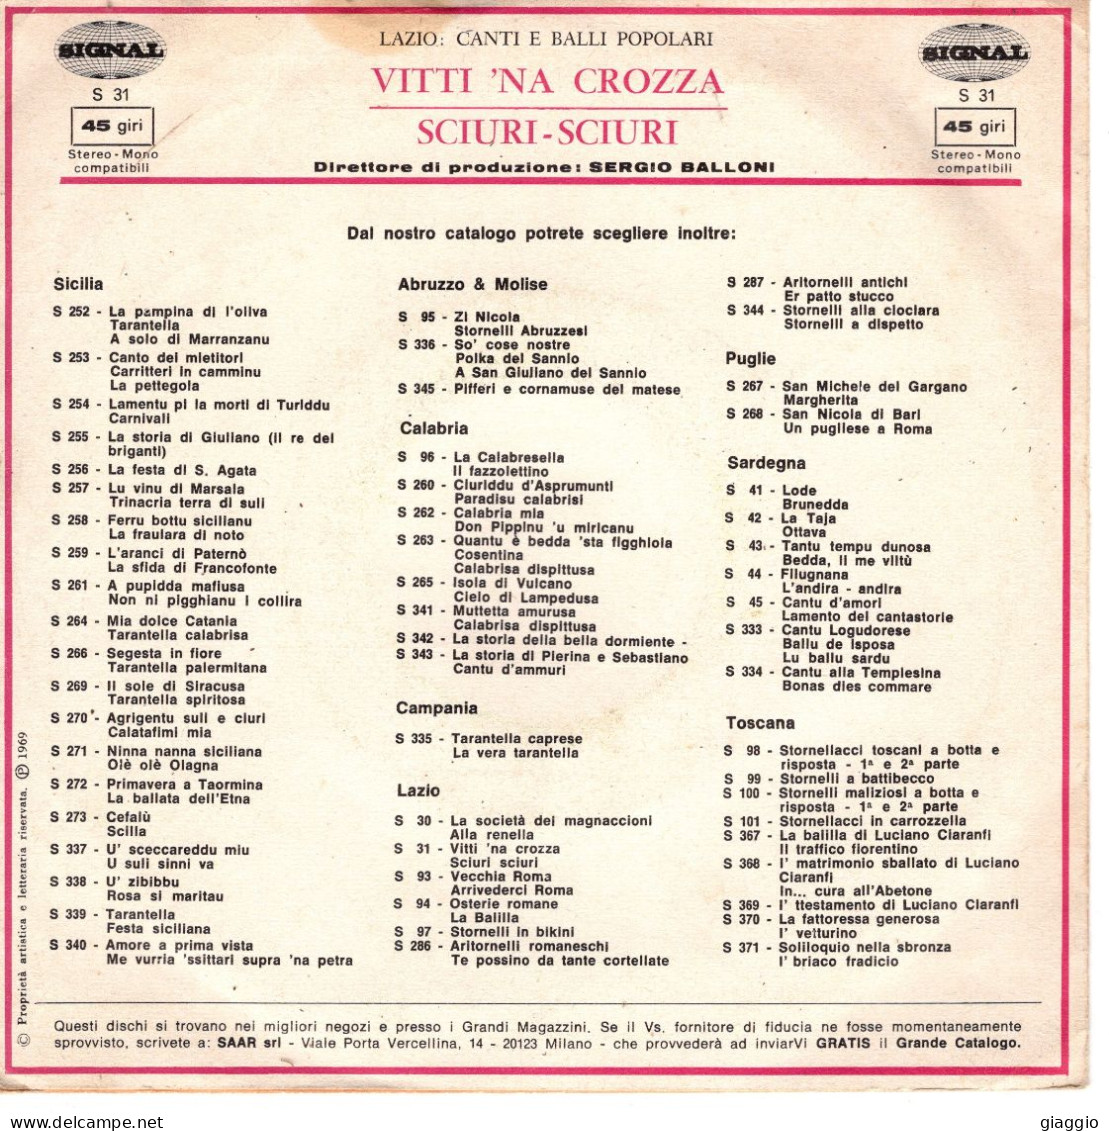 °°° 546) 45 GIRI - LUISA & GABRIELLA - VITTI NA CROZZA / SCIURI SCIURI °°° - Otros - Canción Italiana